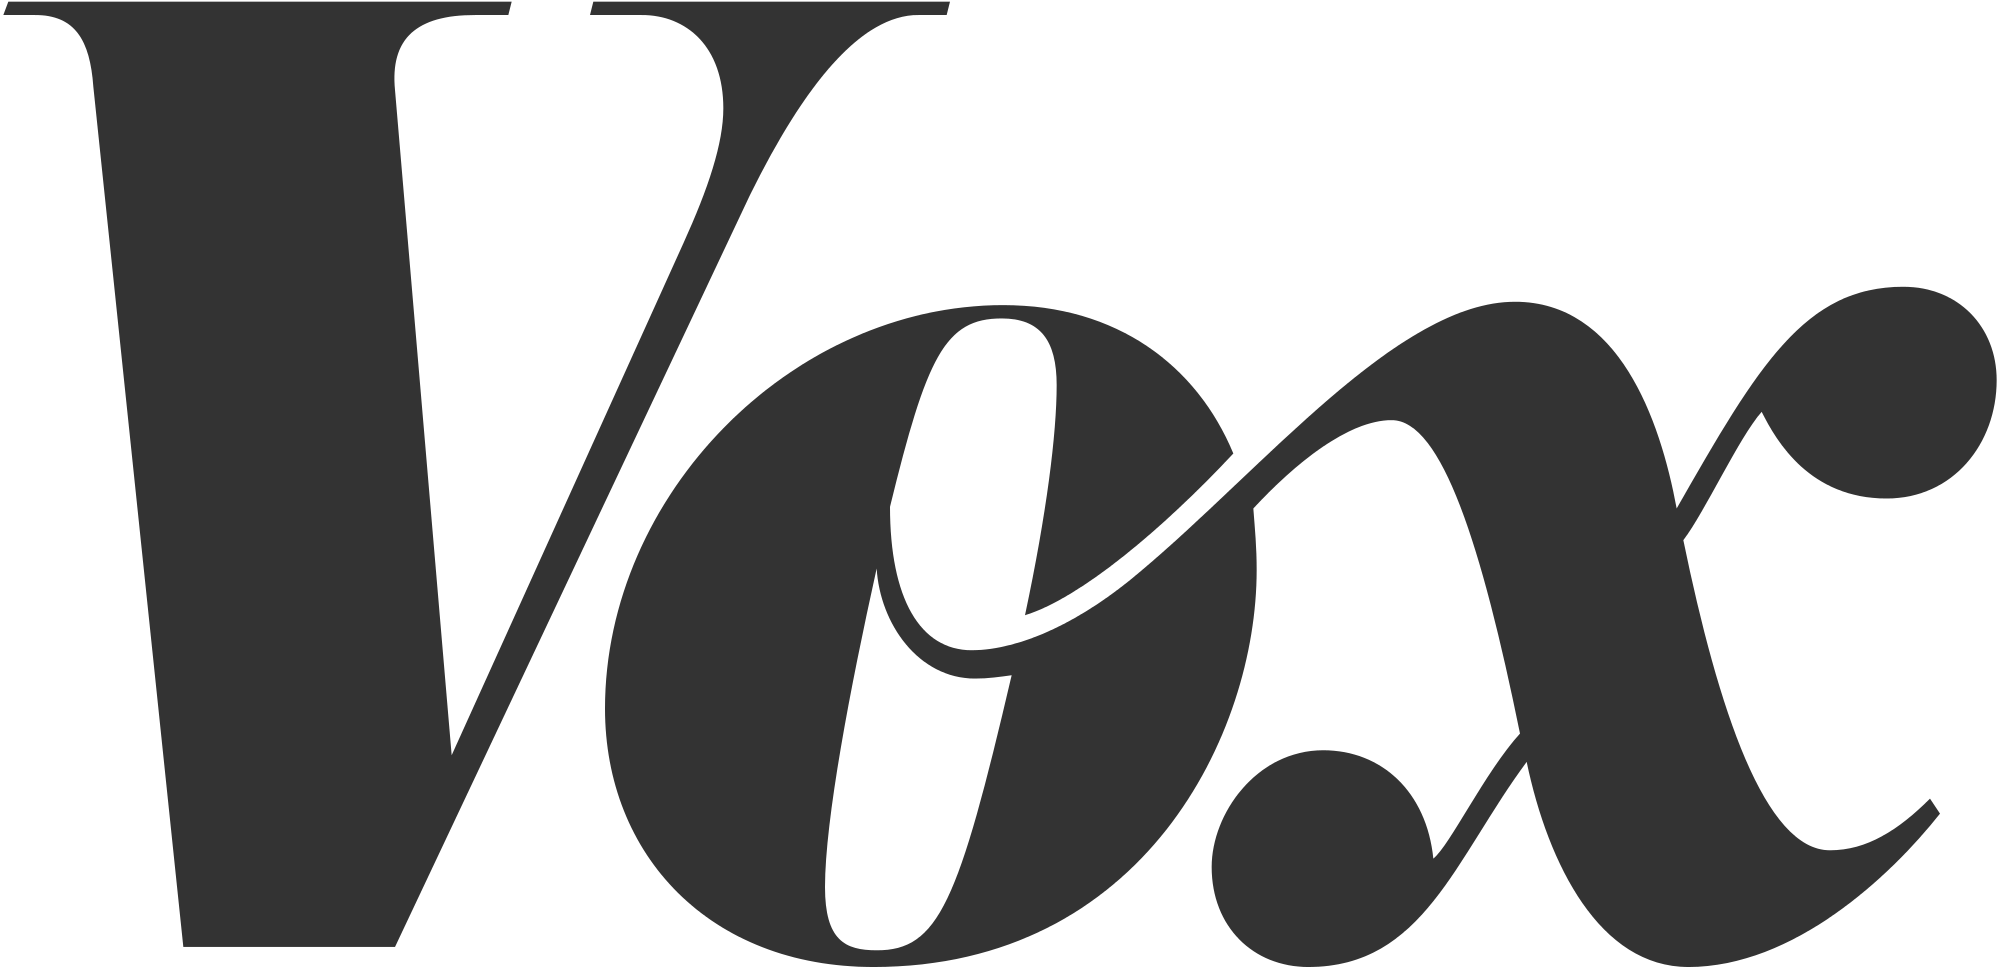 Typografie – Zu welcher Schriftartenkategorie gehört das Vox-Logo? - Grafikdesign ...